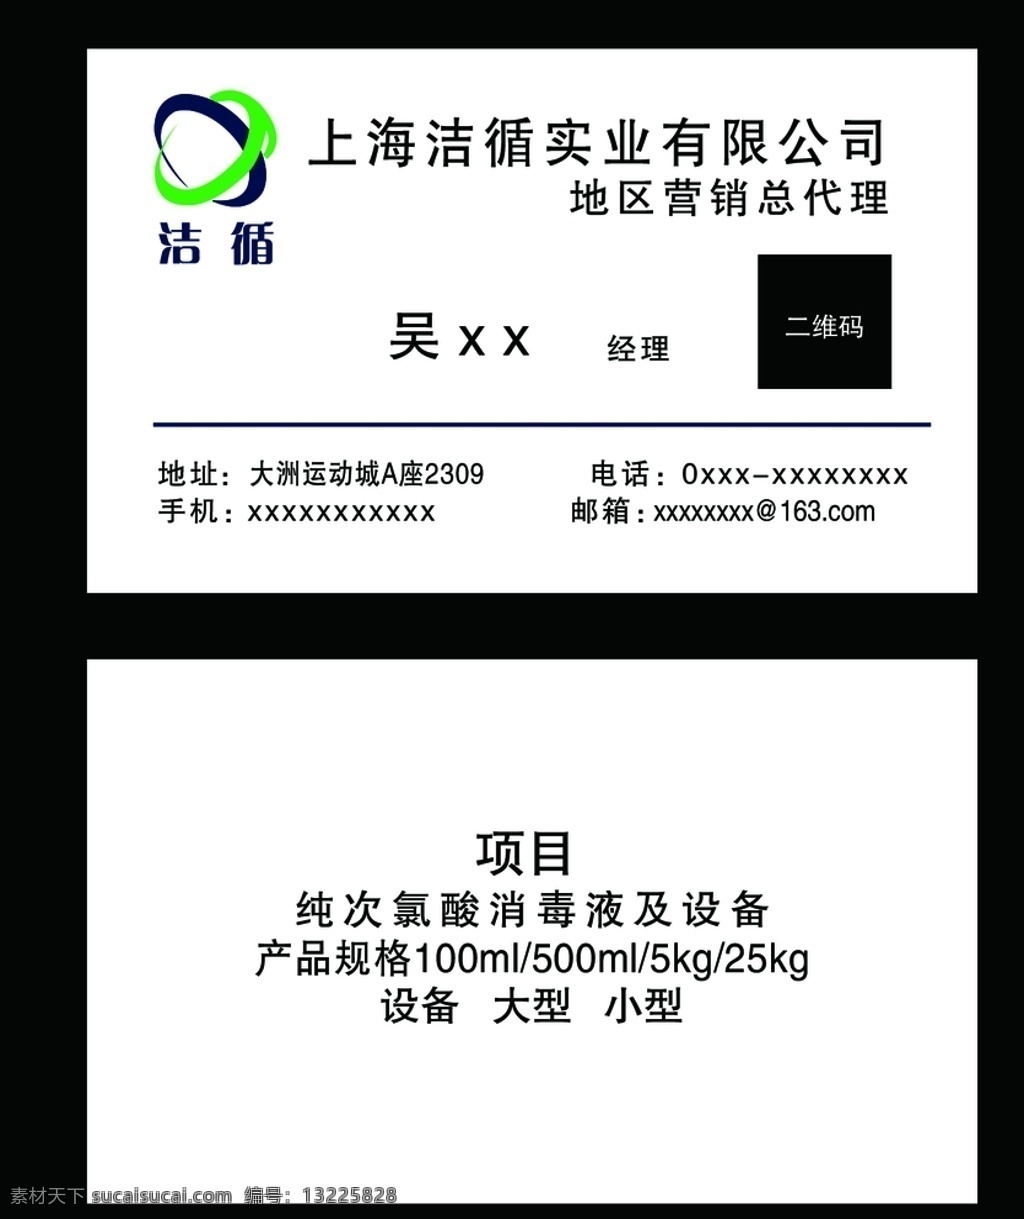 上海高档名片 名片 高档名片 简洁名片 简介名片 销售名片 代理名片 个性名片 名片设计 jinguangsheji 分层